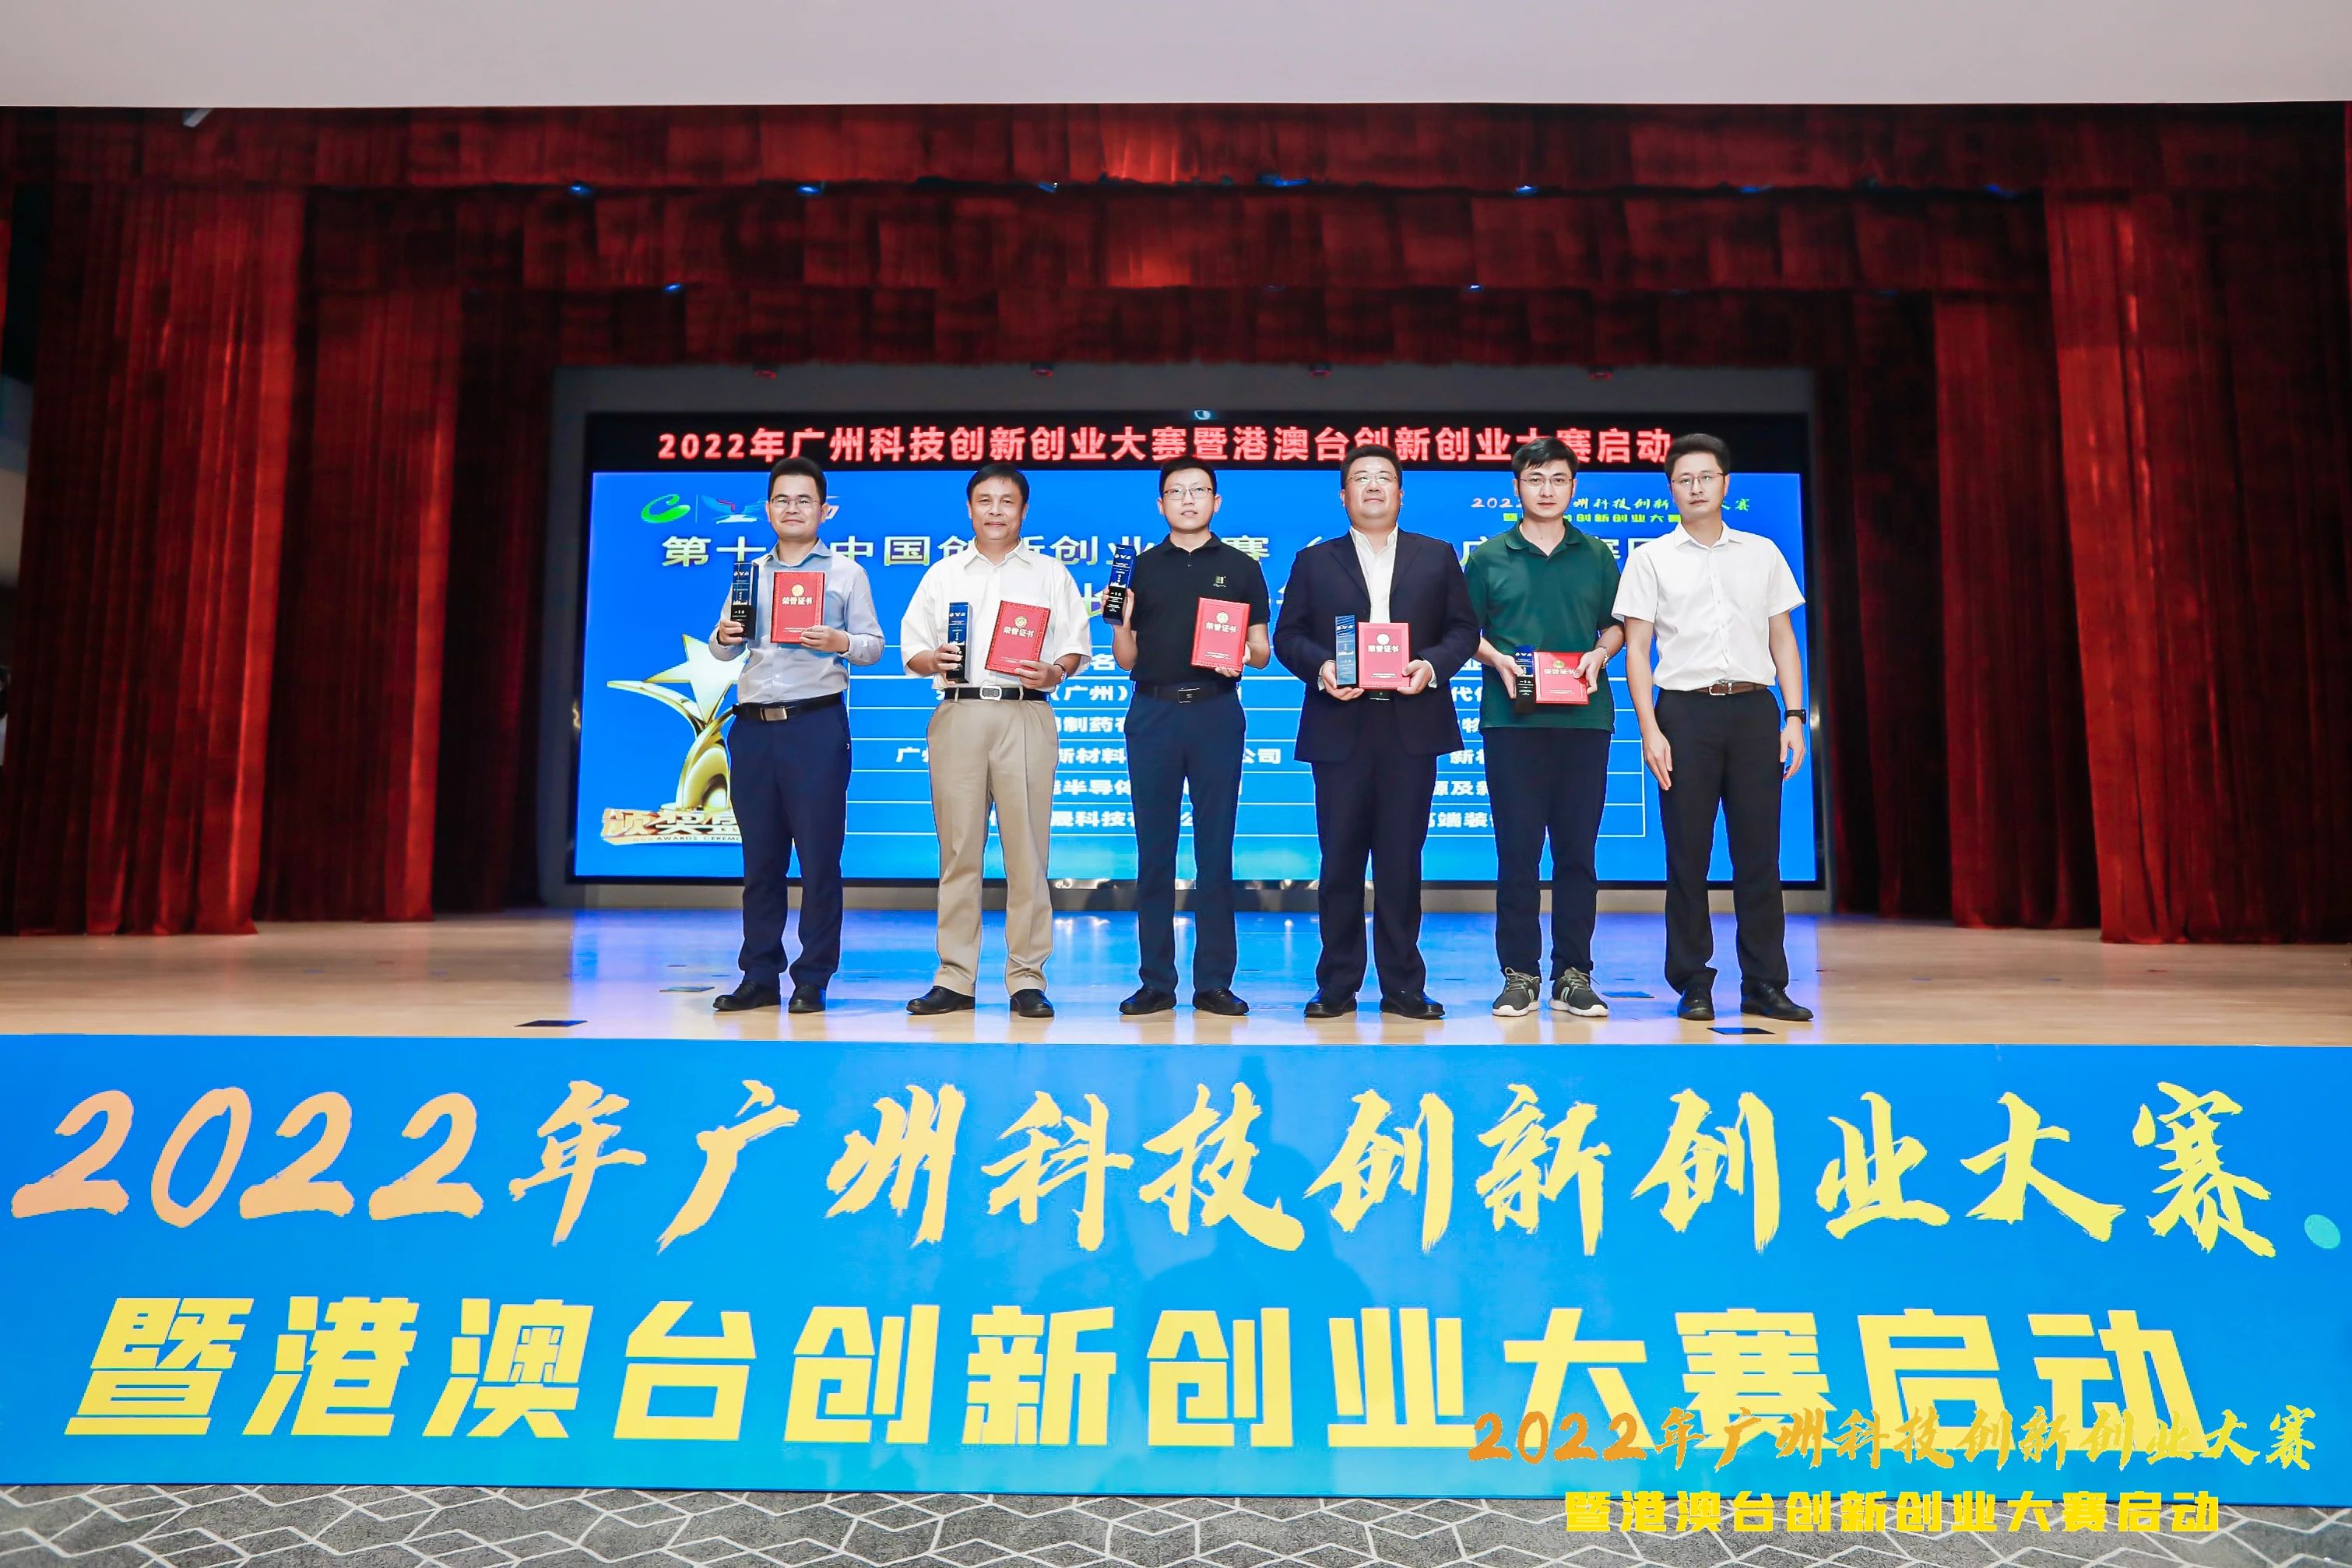 谱临晟科技荣获第十届中国创新创业大赛广州市第一名